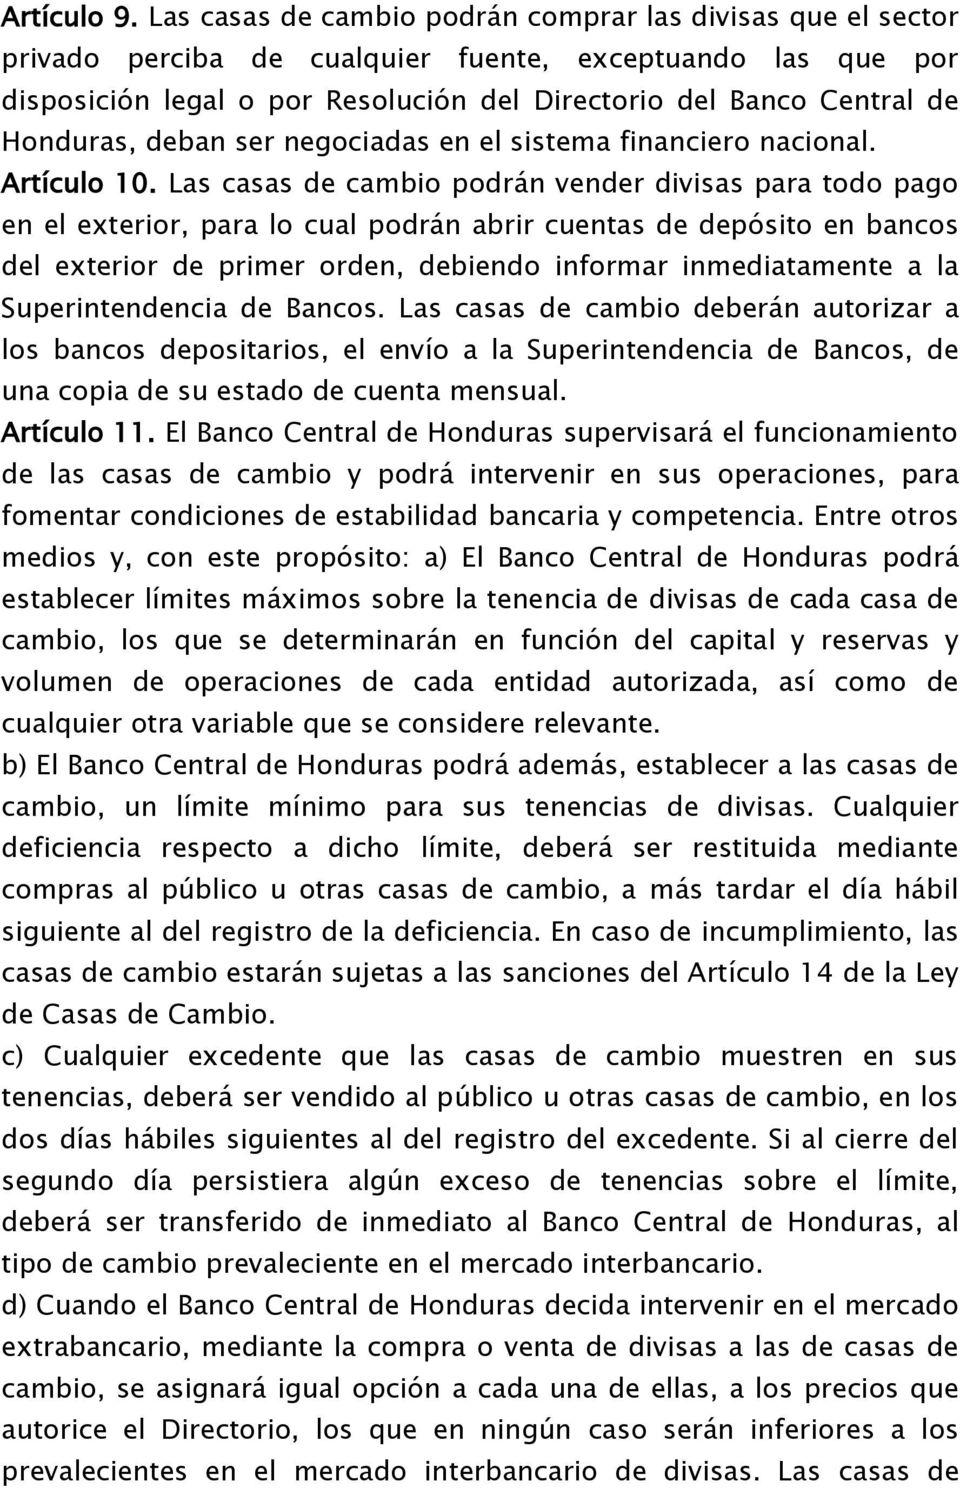 Honduras, deban ser negociadas en el sistema financiero nacional. Artículo 10.